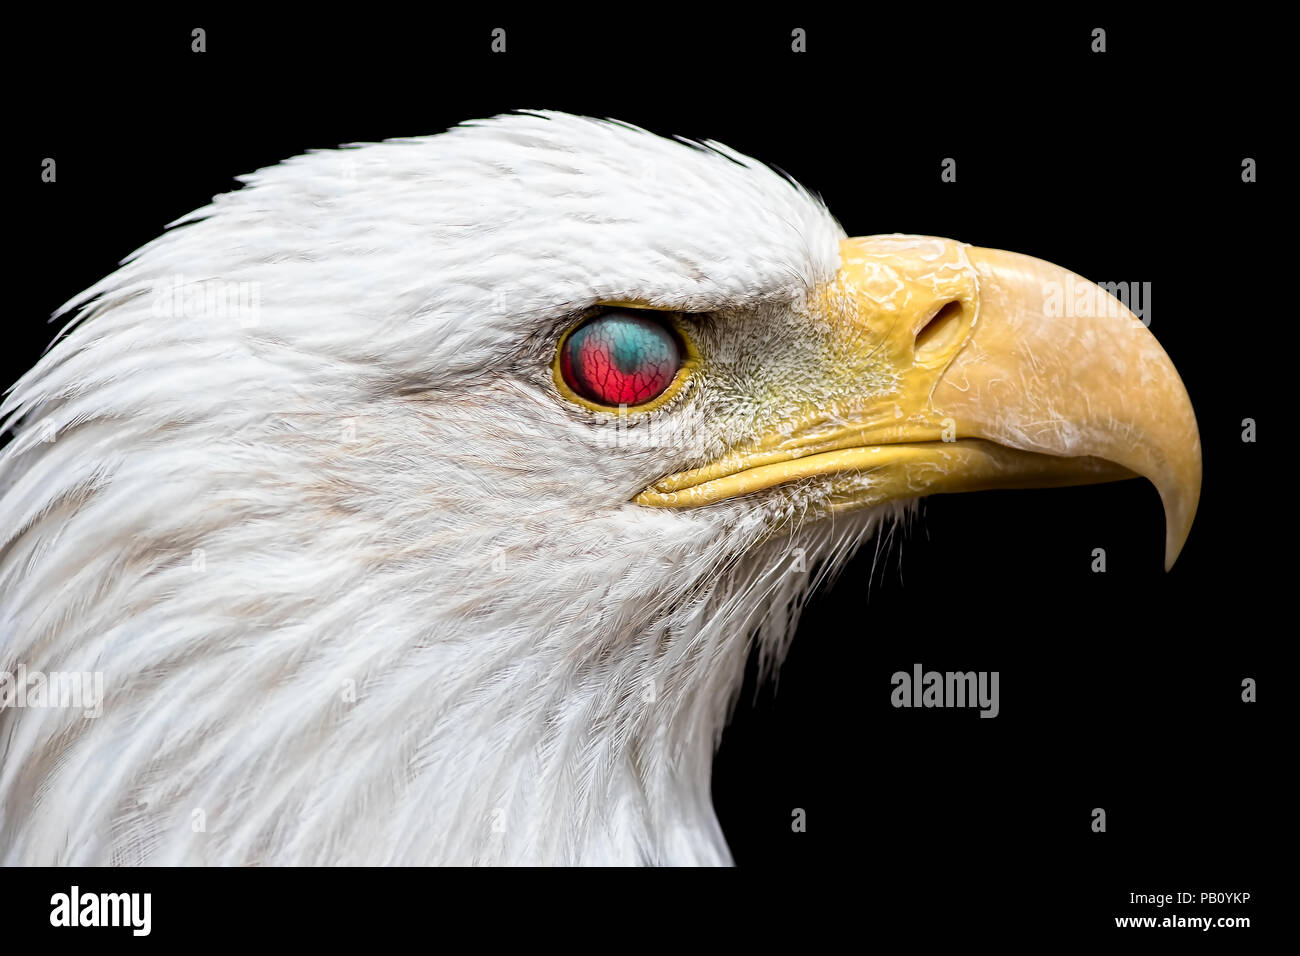 Wütend Weißkopfseeadler. Zombie suchen Vogel mit dem Auge reflektiert rotes Licht macht es aussehen wie ein böses Tier besaß. Tatsächliche Blutgefäße ar Stockfoto